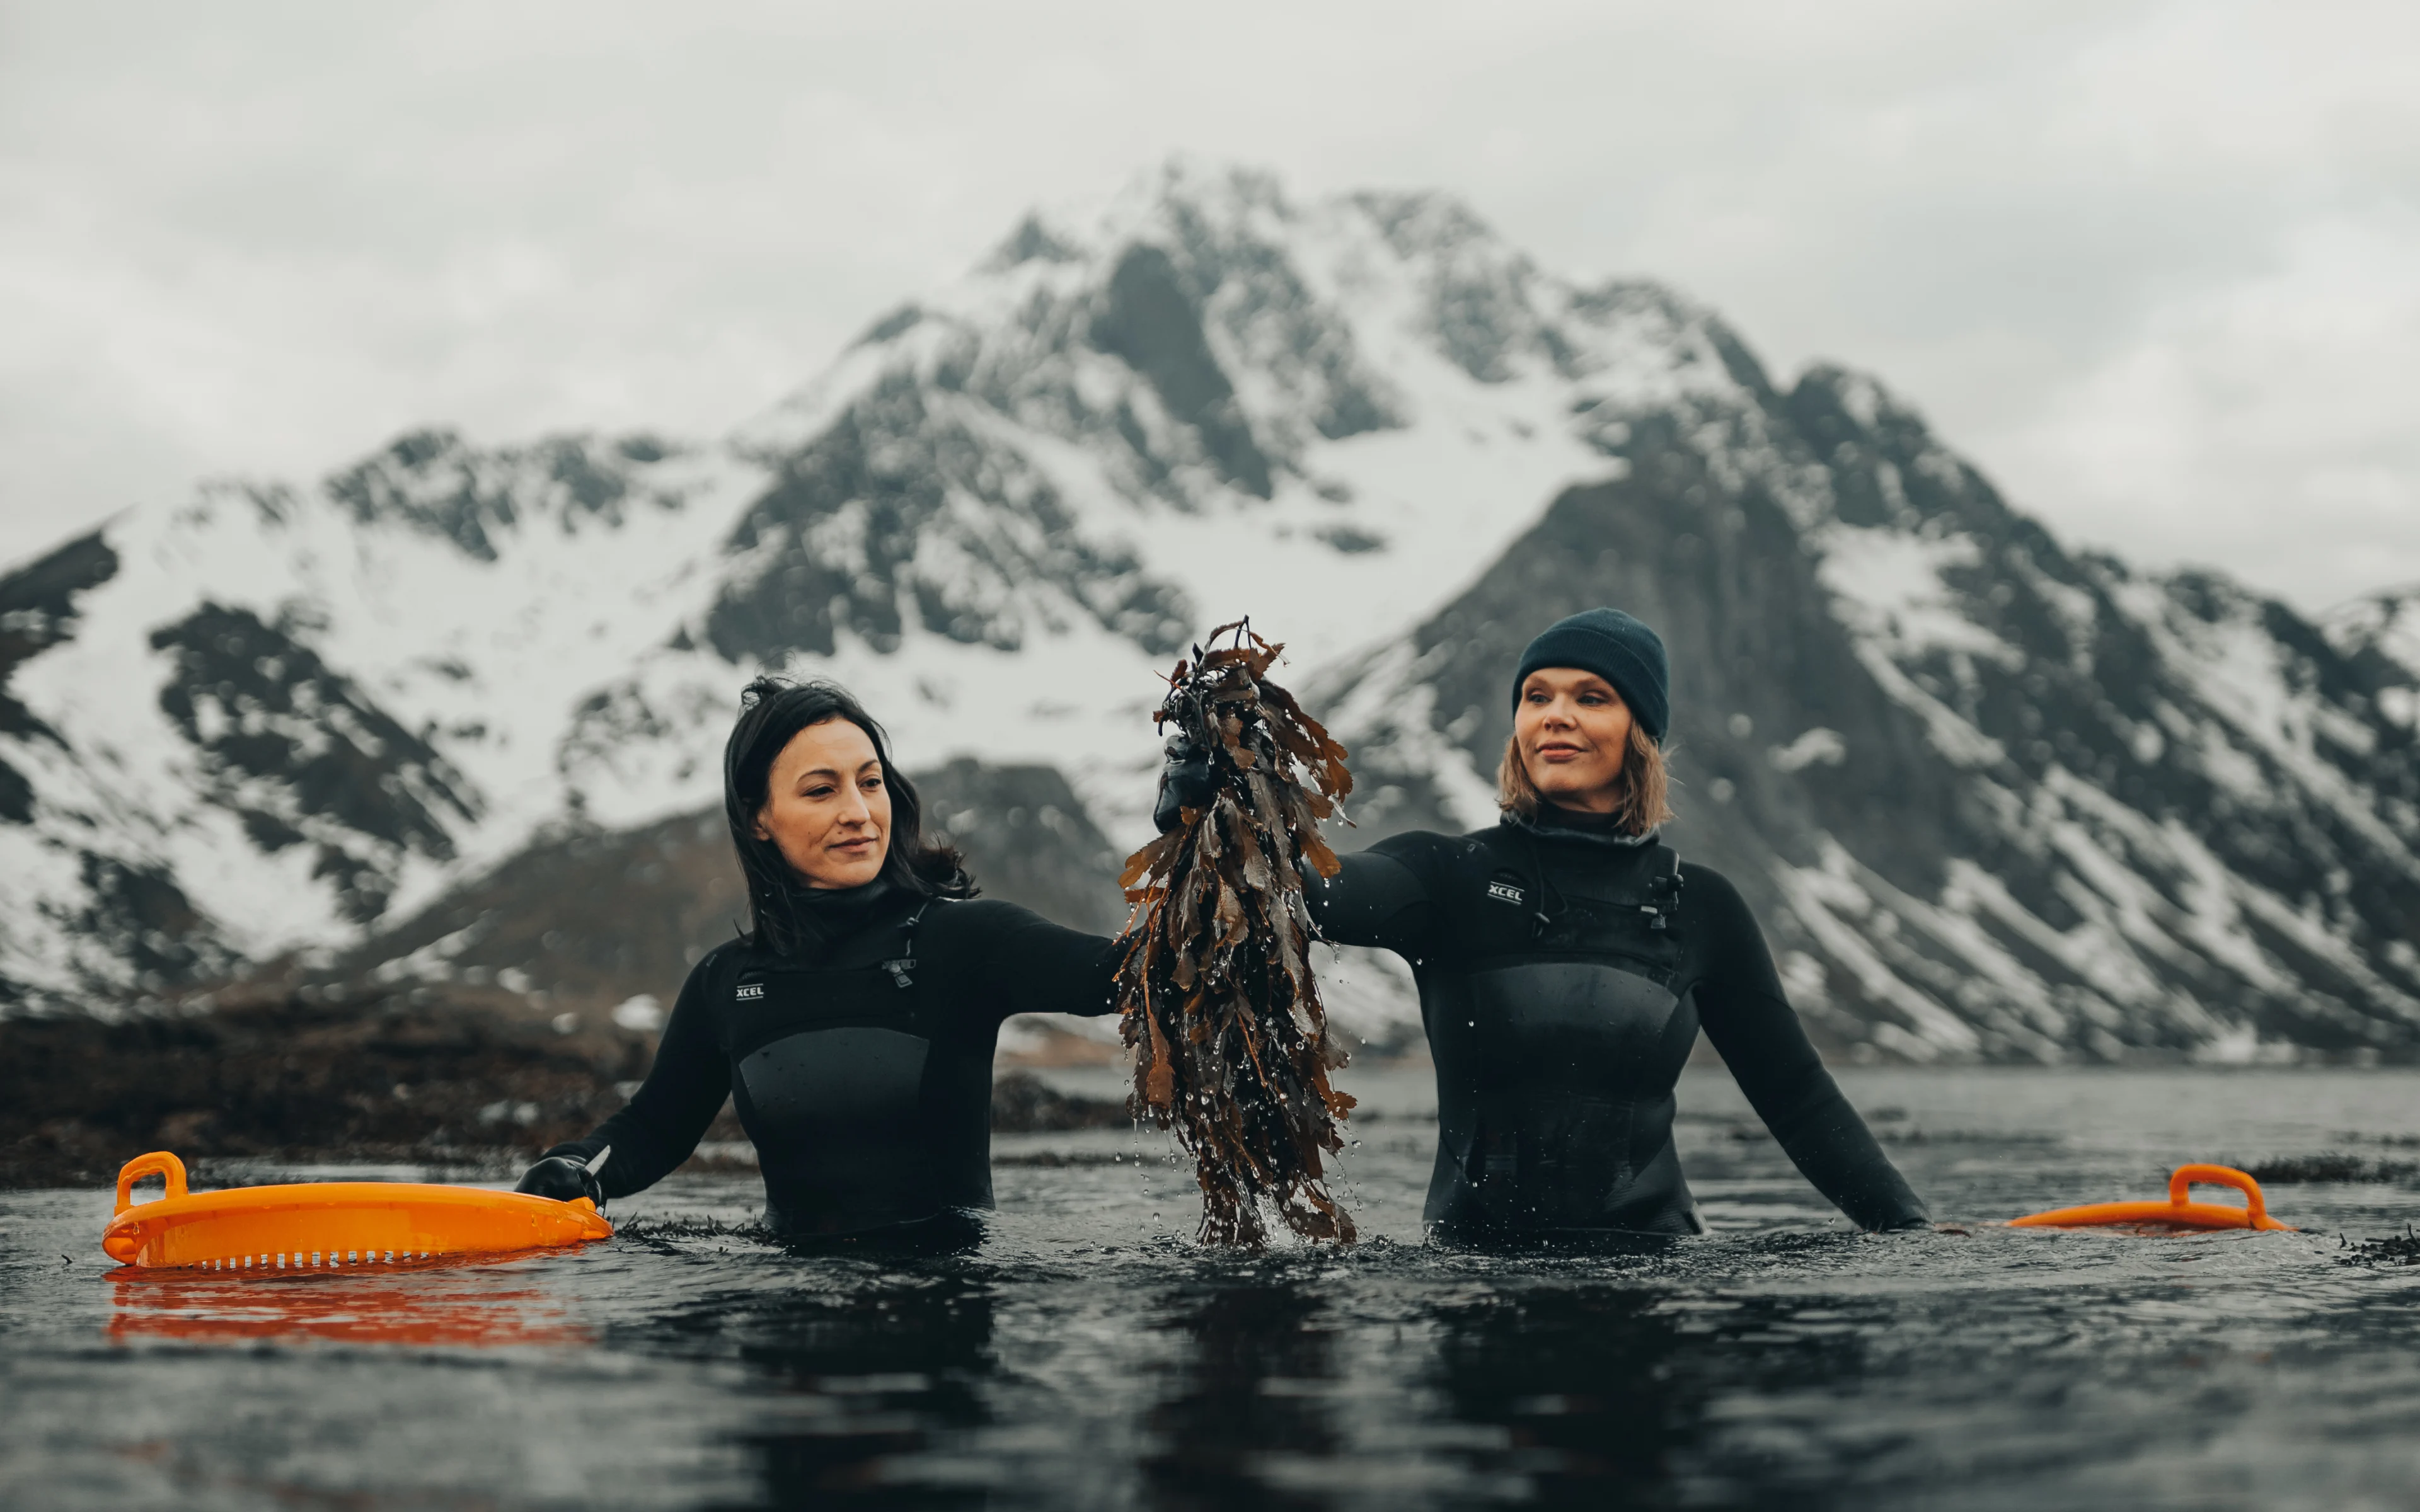 Lofoten Seaweed – hållbara sjögräsprodukter